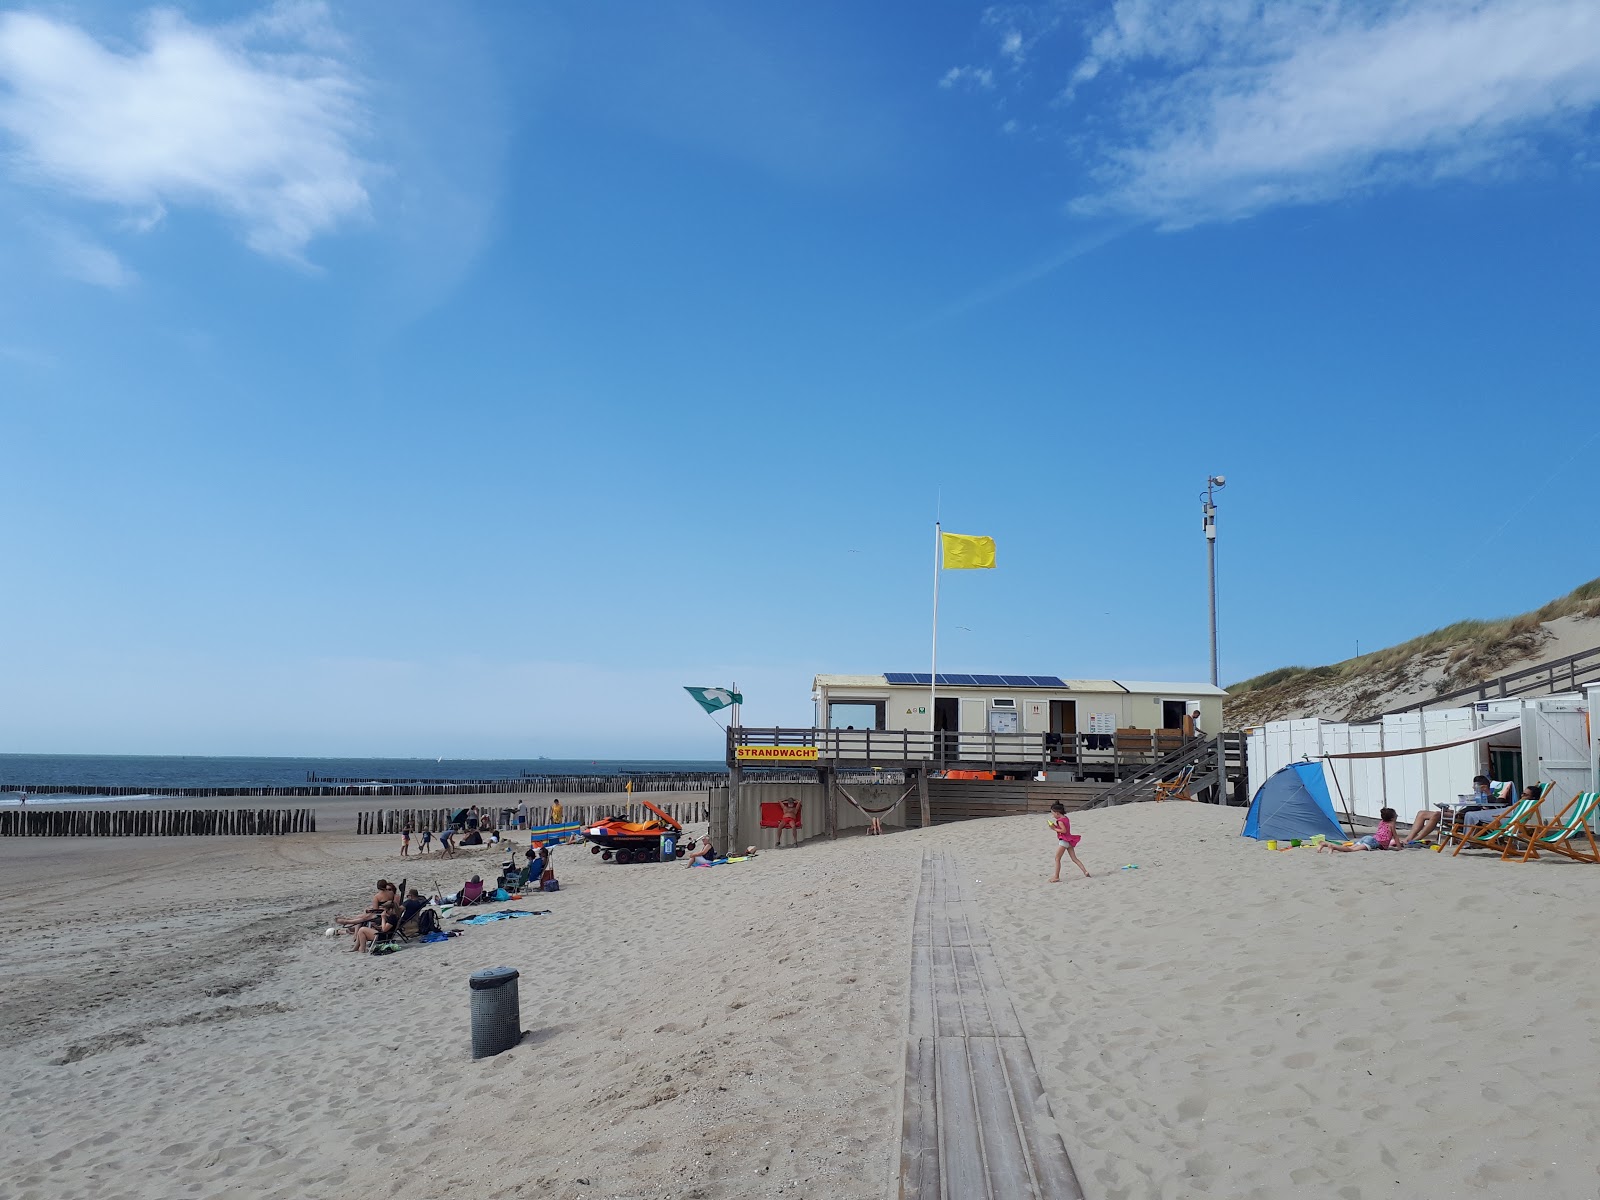 Foto af Joossesweg beach - populært sted blandt afslapningskendere